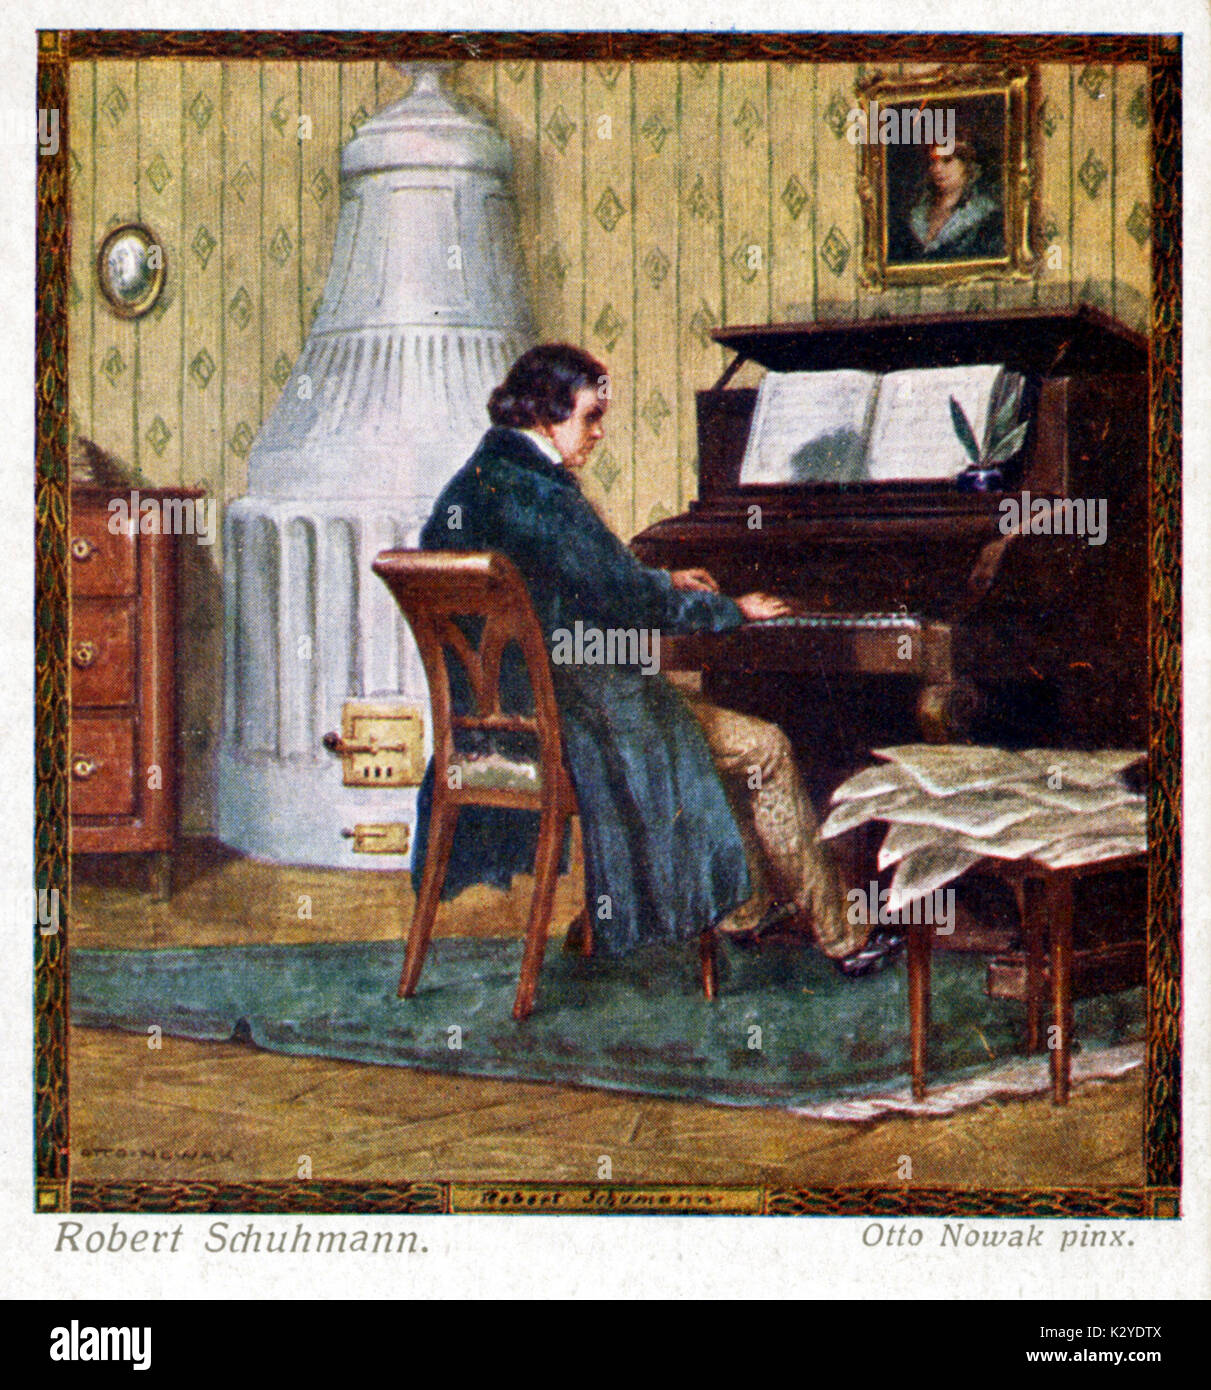 Robert Schumann, la composition au piano. Compositeur allemand, 1810-1856. Banque D'Images